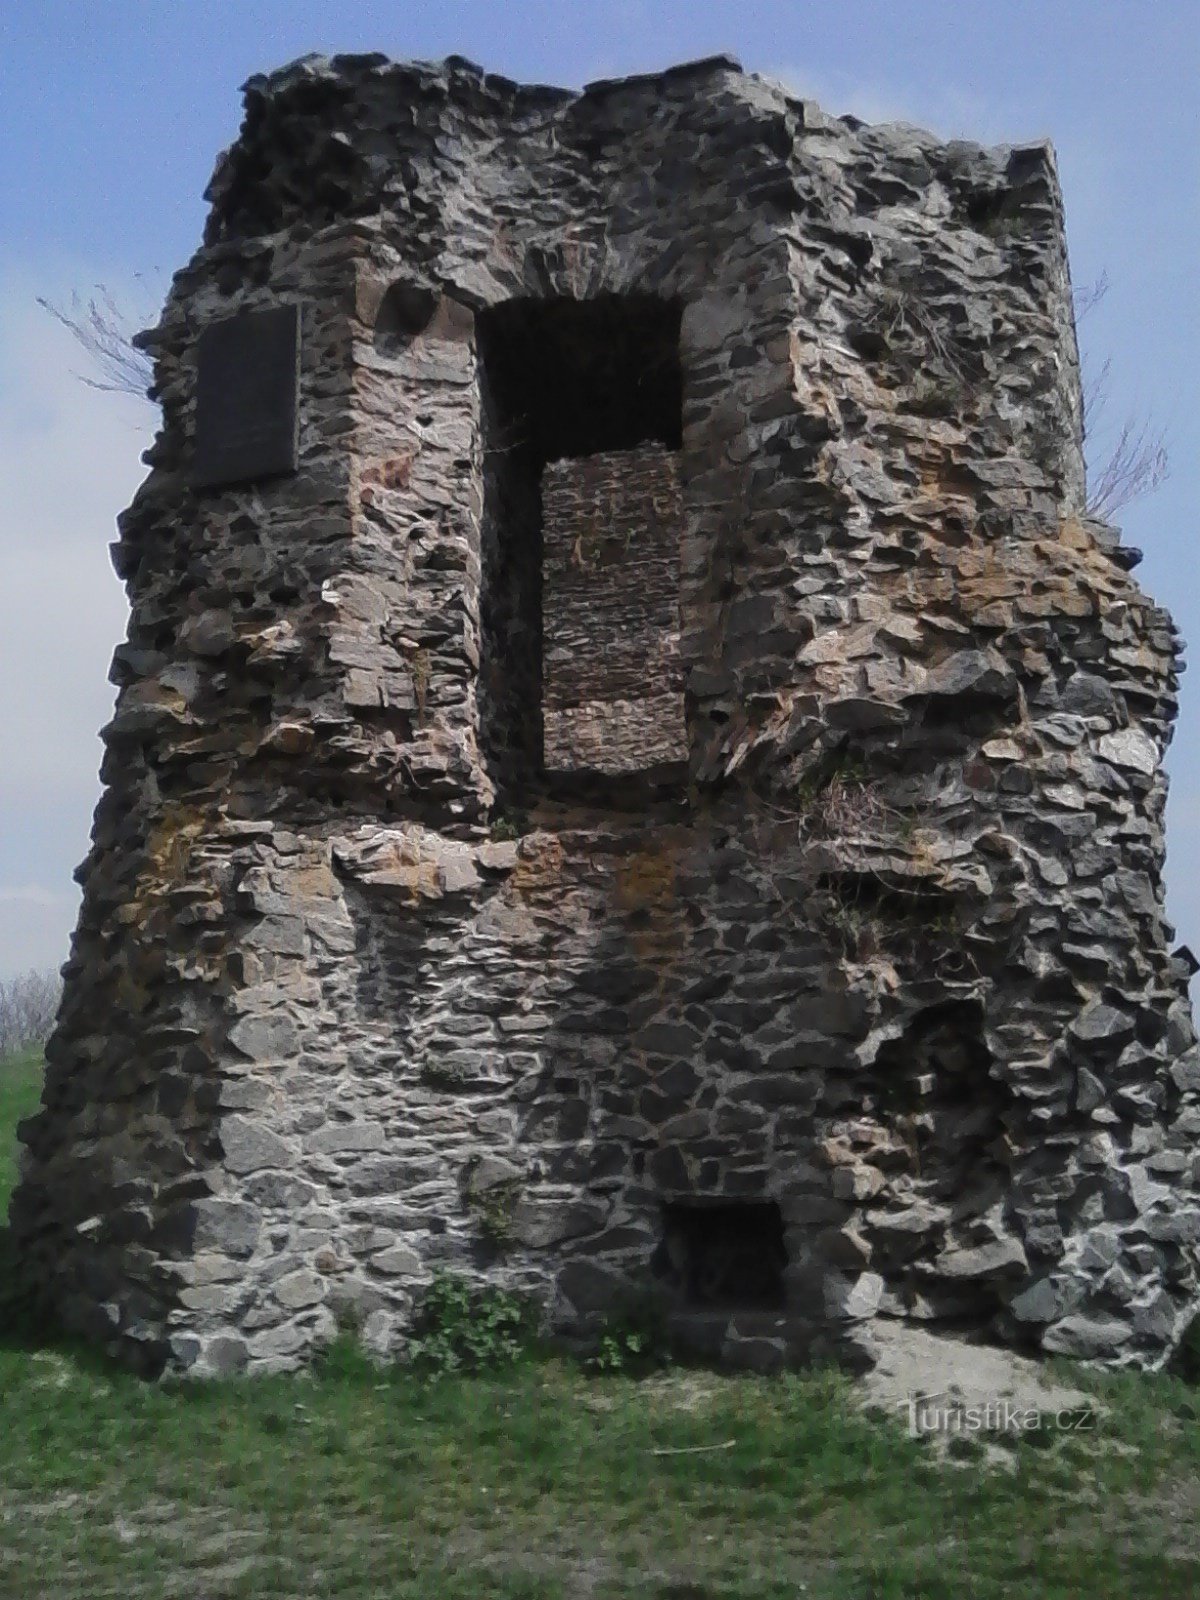 2. Faz parte das muralhas do Castelo da Borotina, acima, uma placa comemorativa da visita de KH Mácha.